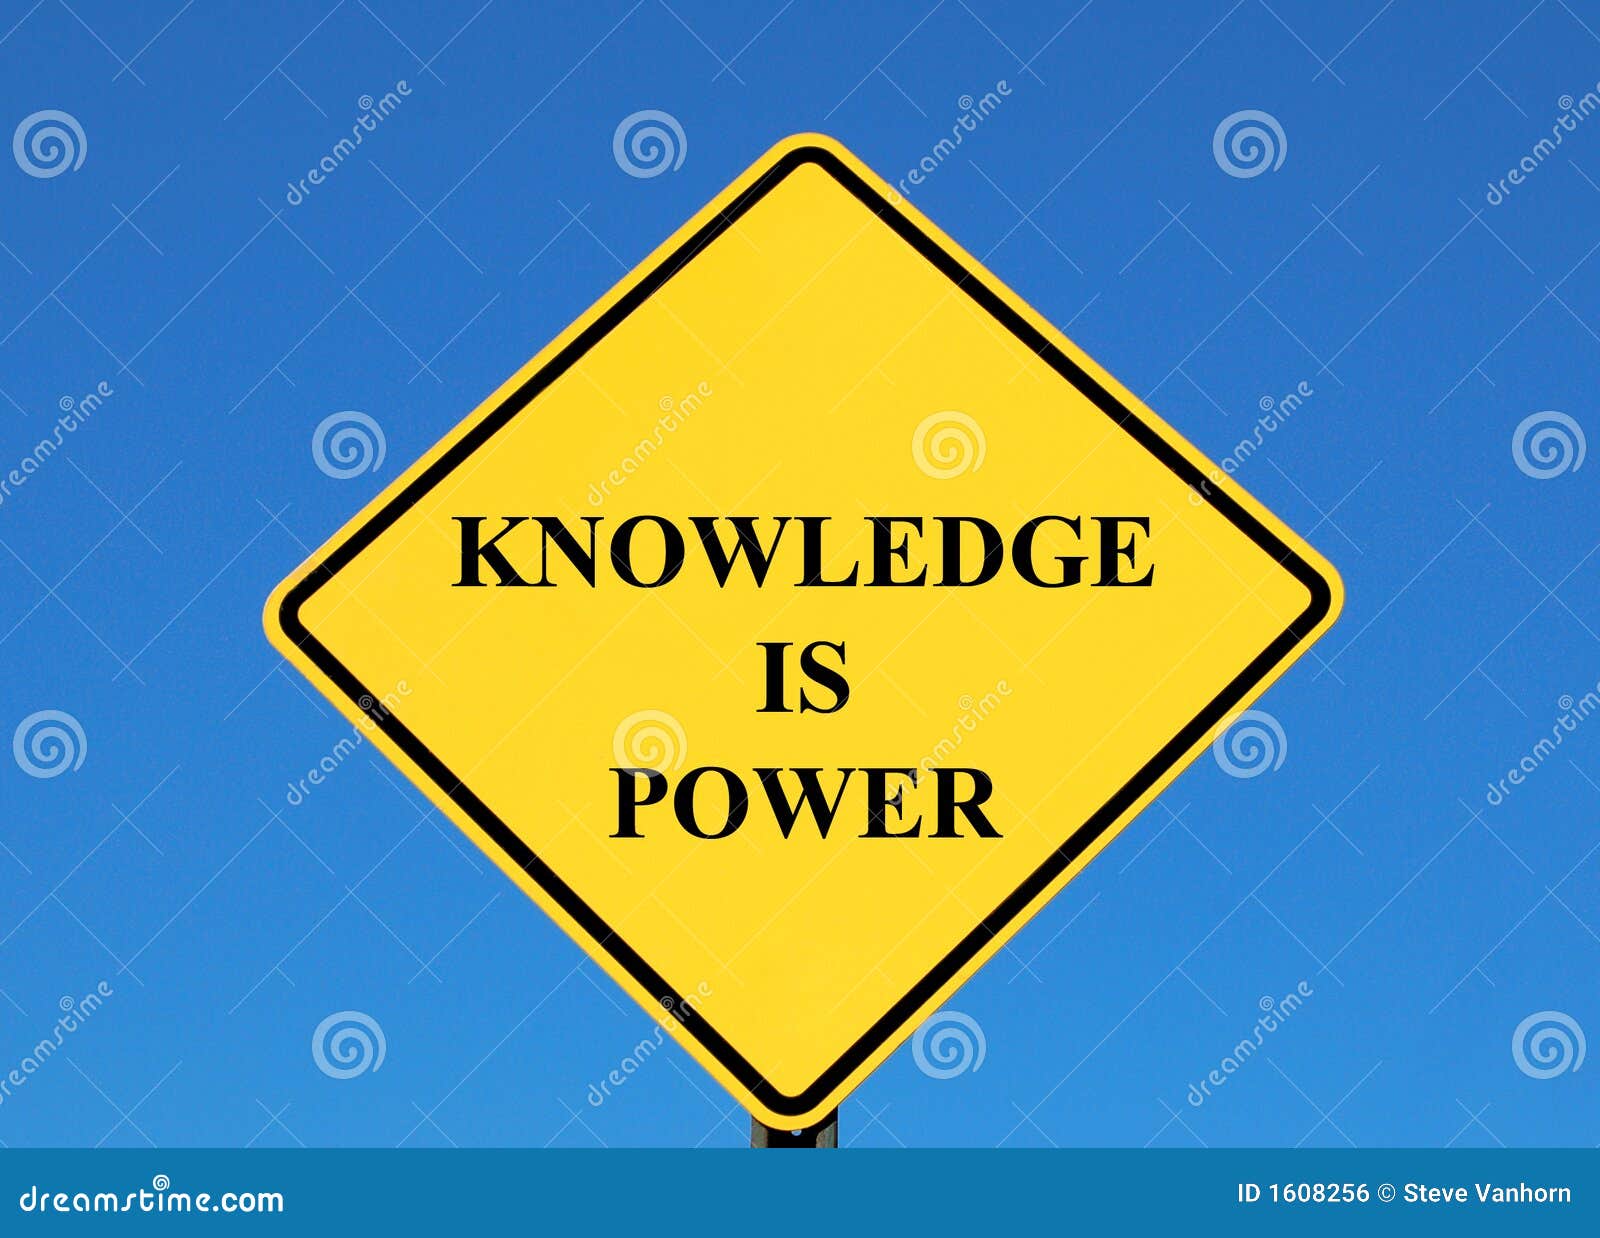 knowledge-power-1608256.jpg